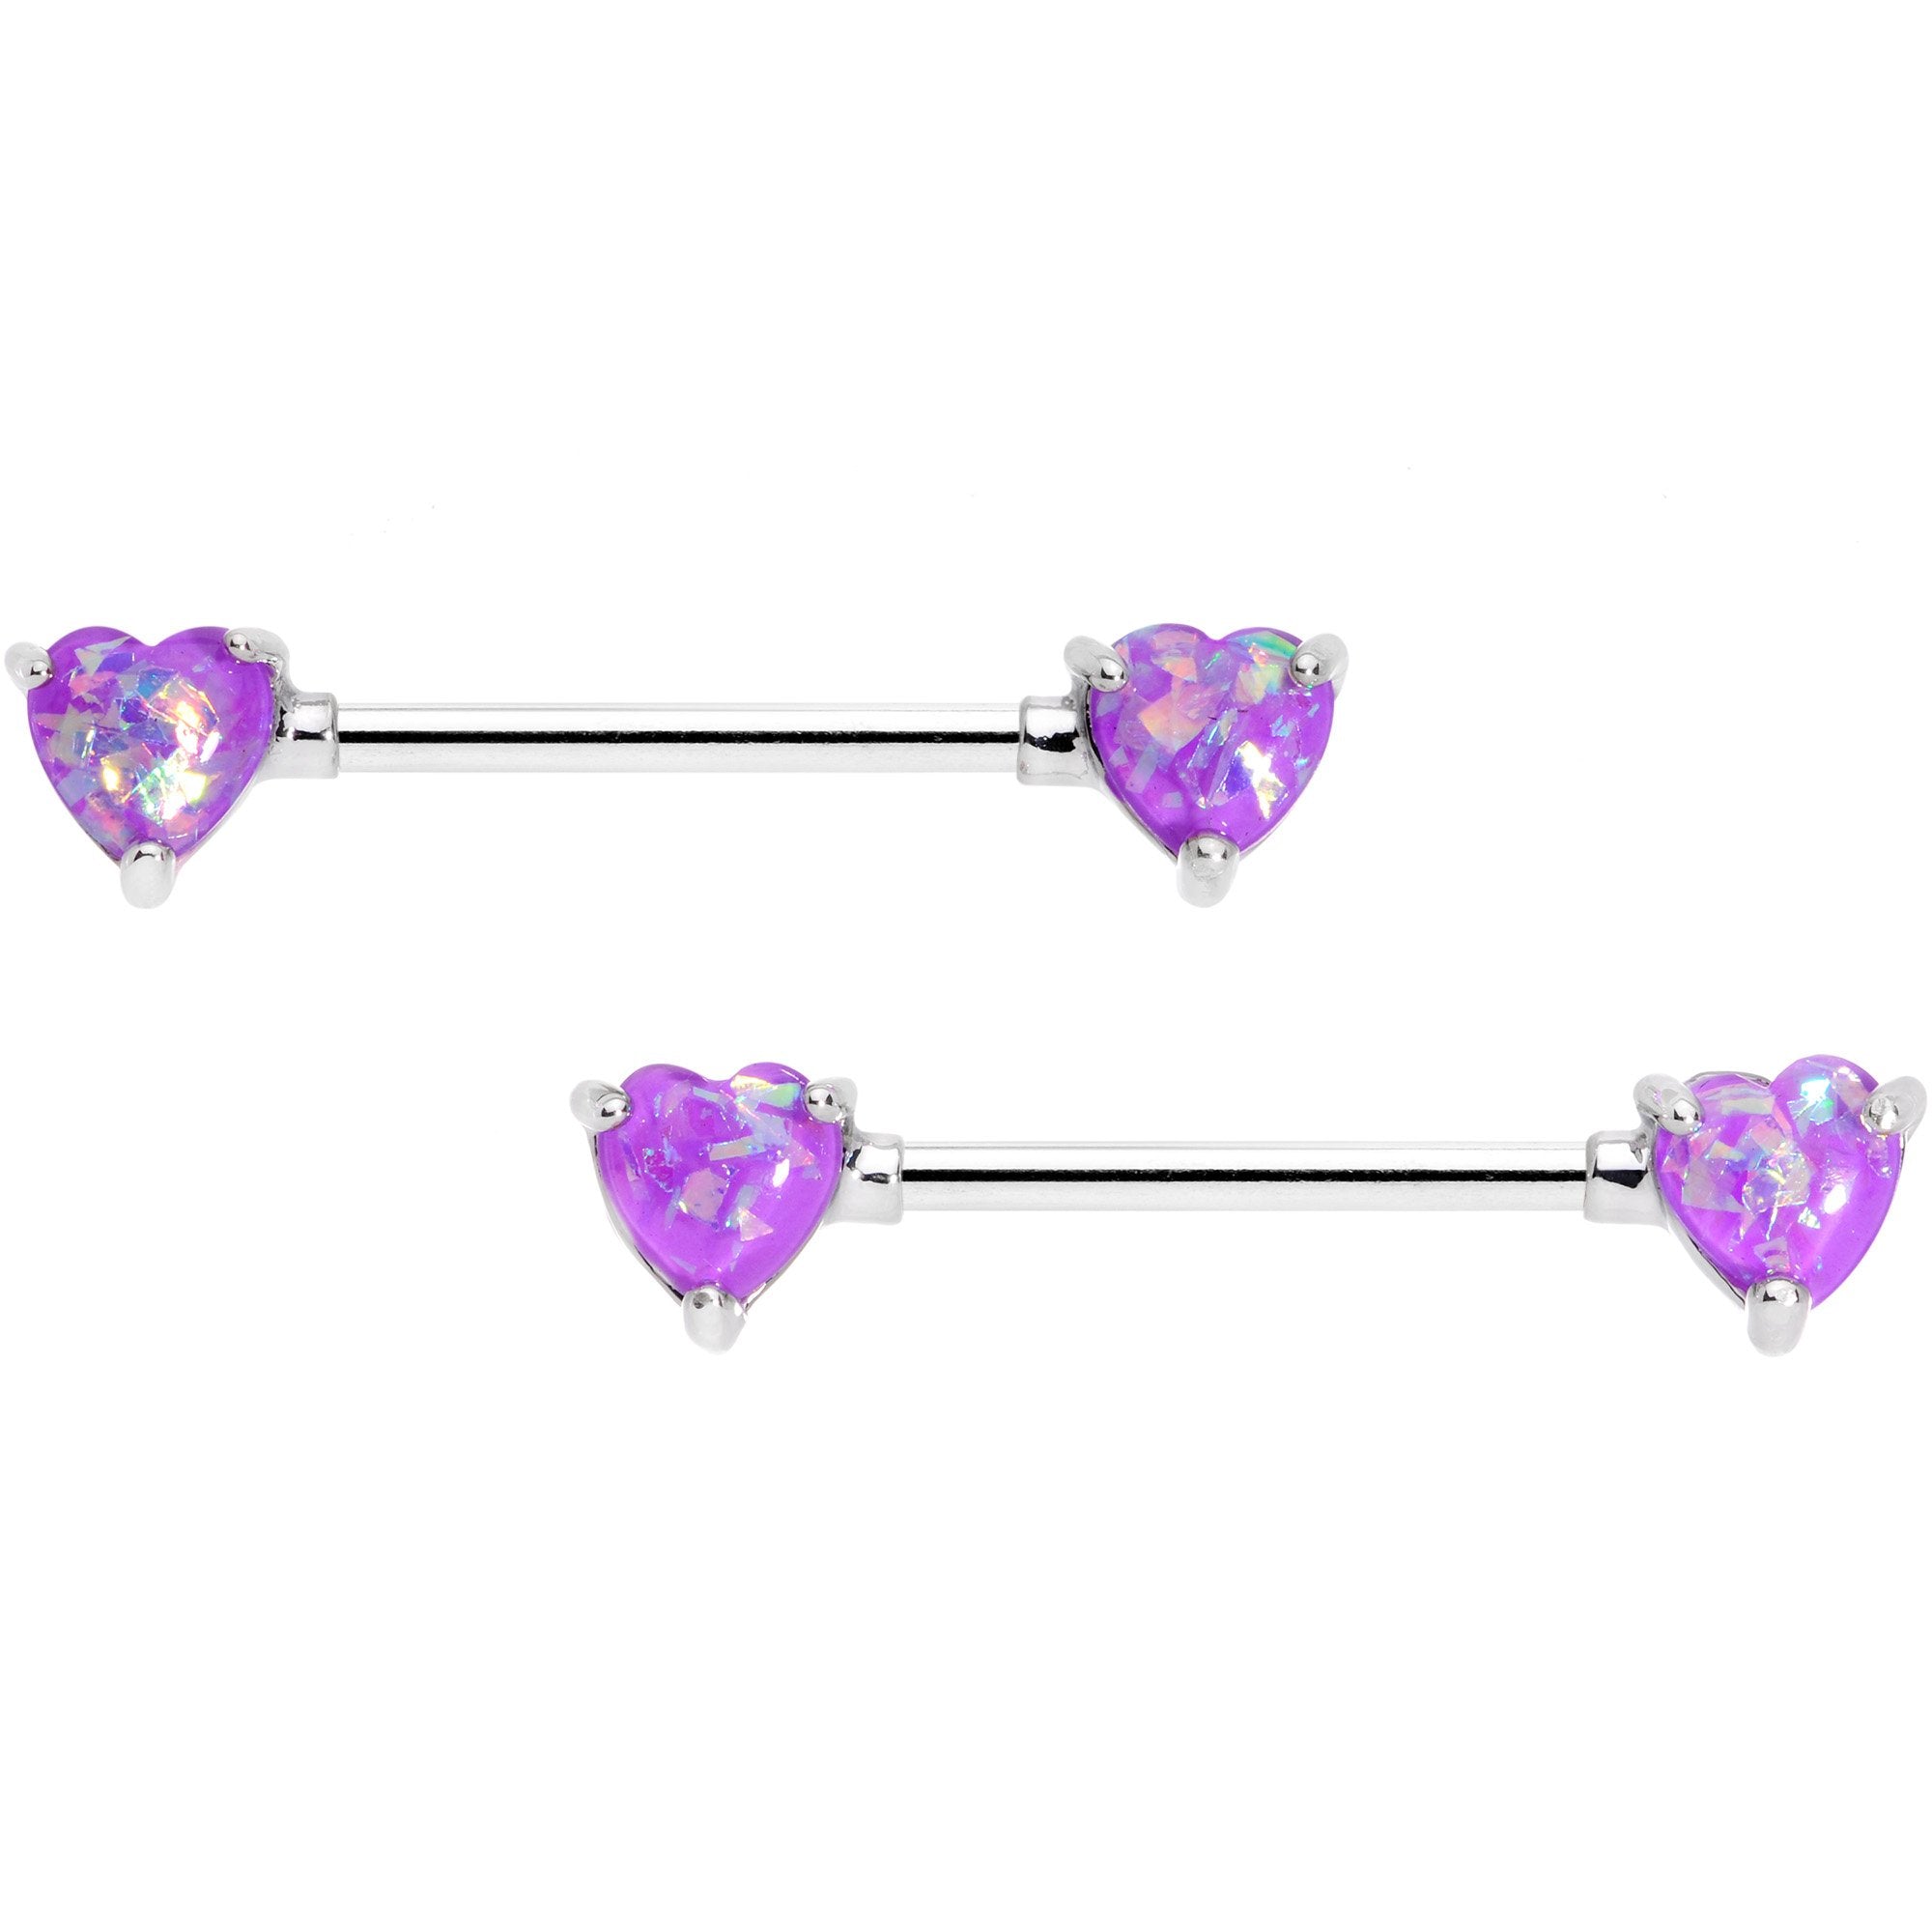 14 Gauge Purple Faux Opal Heart BCR Barbell Nipple Ring Set of 4